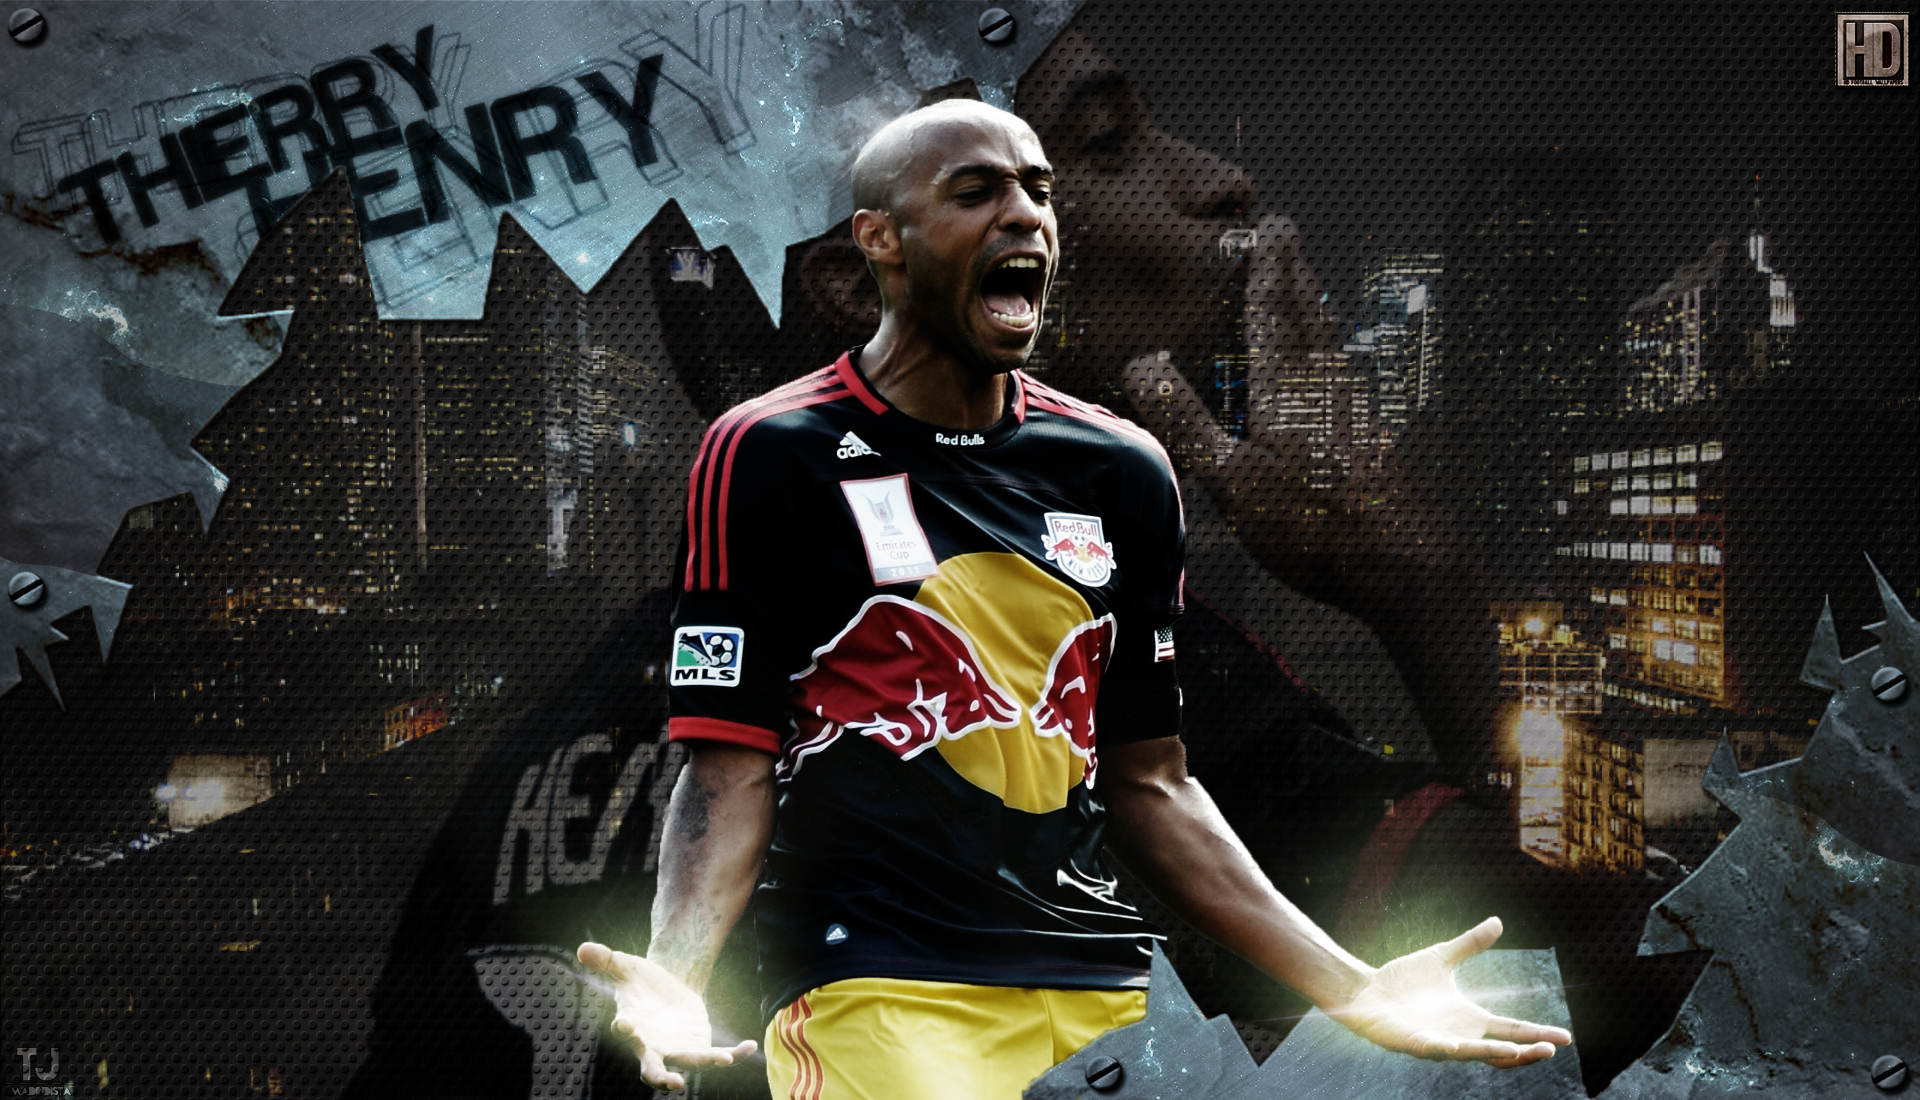 Descarga gratuita de fondo de pantalla para móvil de Fútbol, Deporte, Thierry Henry, Toros Rojos De Nueva York.